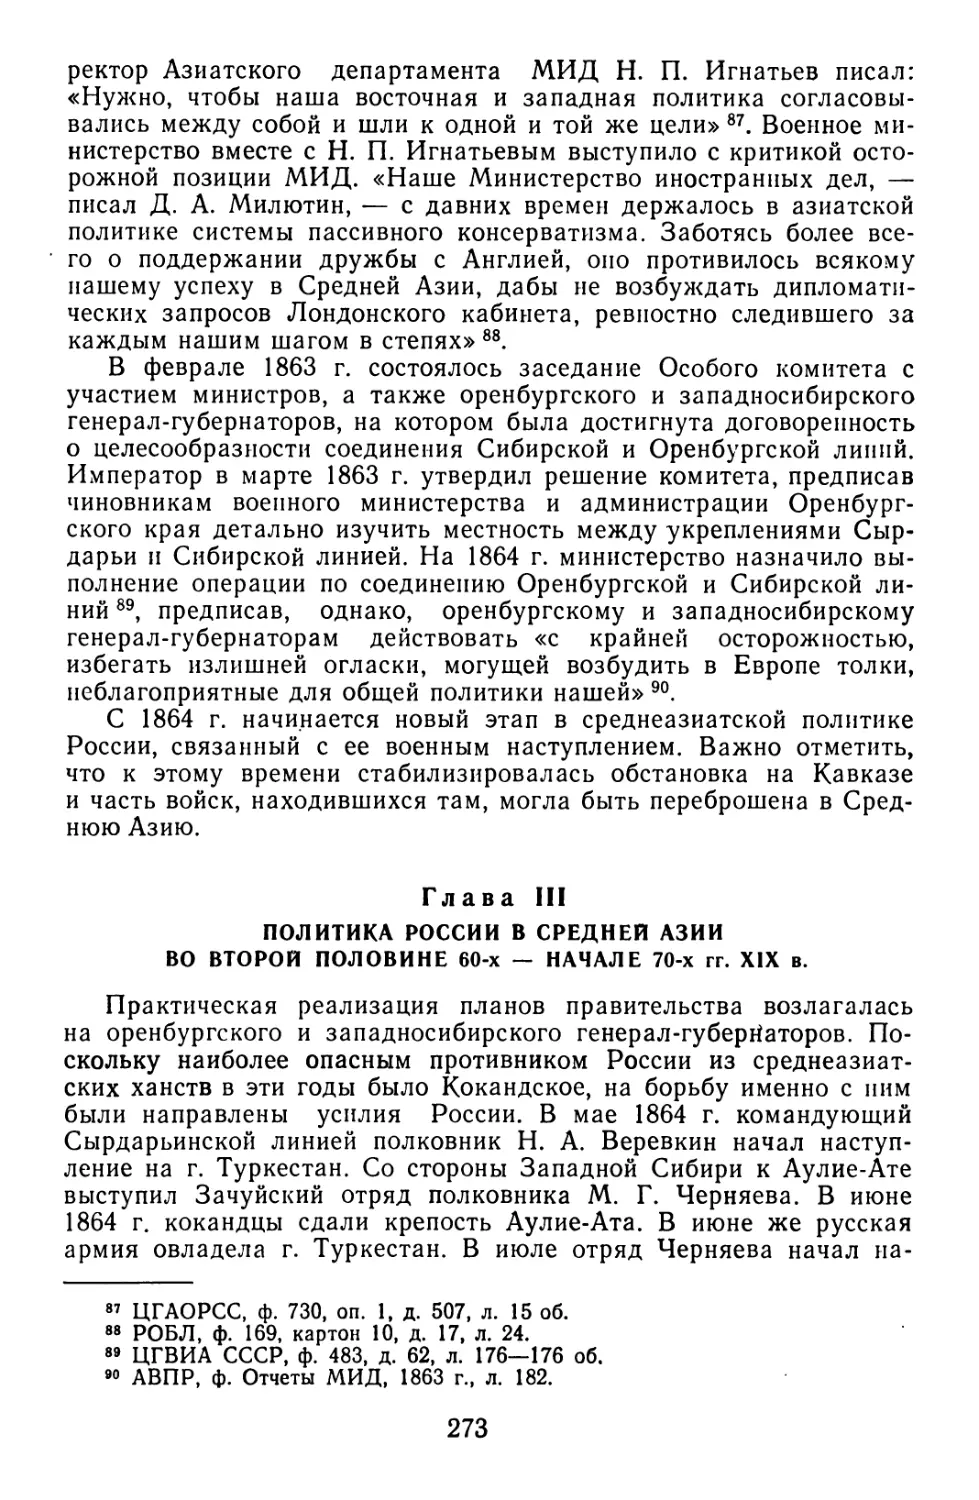 Глава III. Политика России в Средней Азии во второй половине 60-х — начале 70-х XIX в.